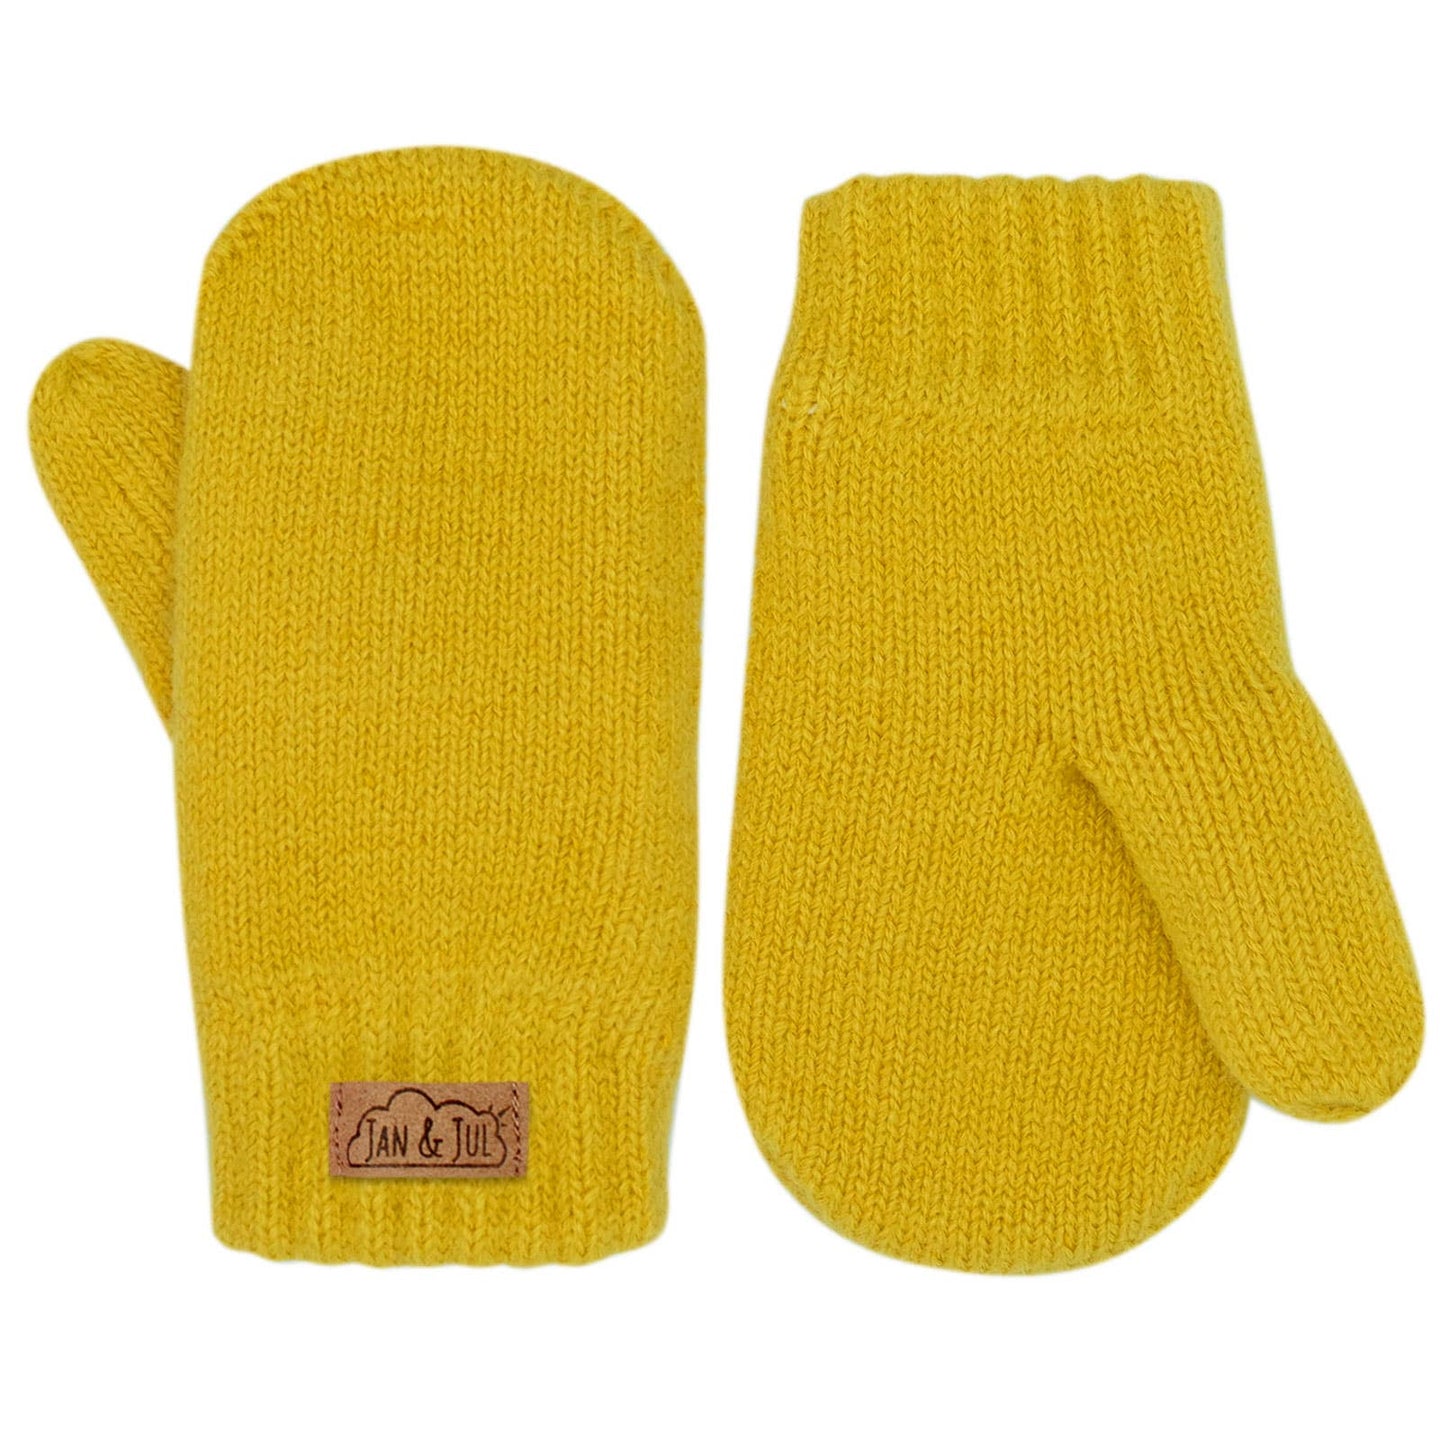 Kids knit mittens - mustard